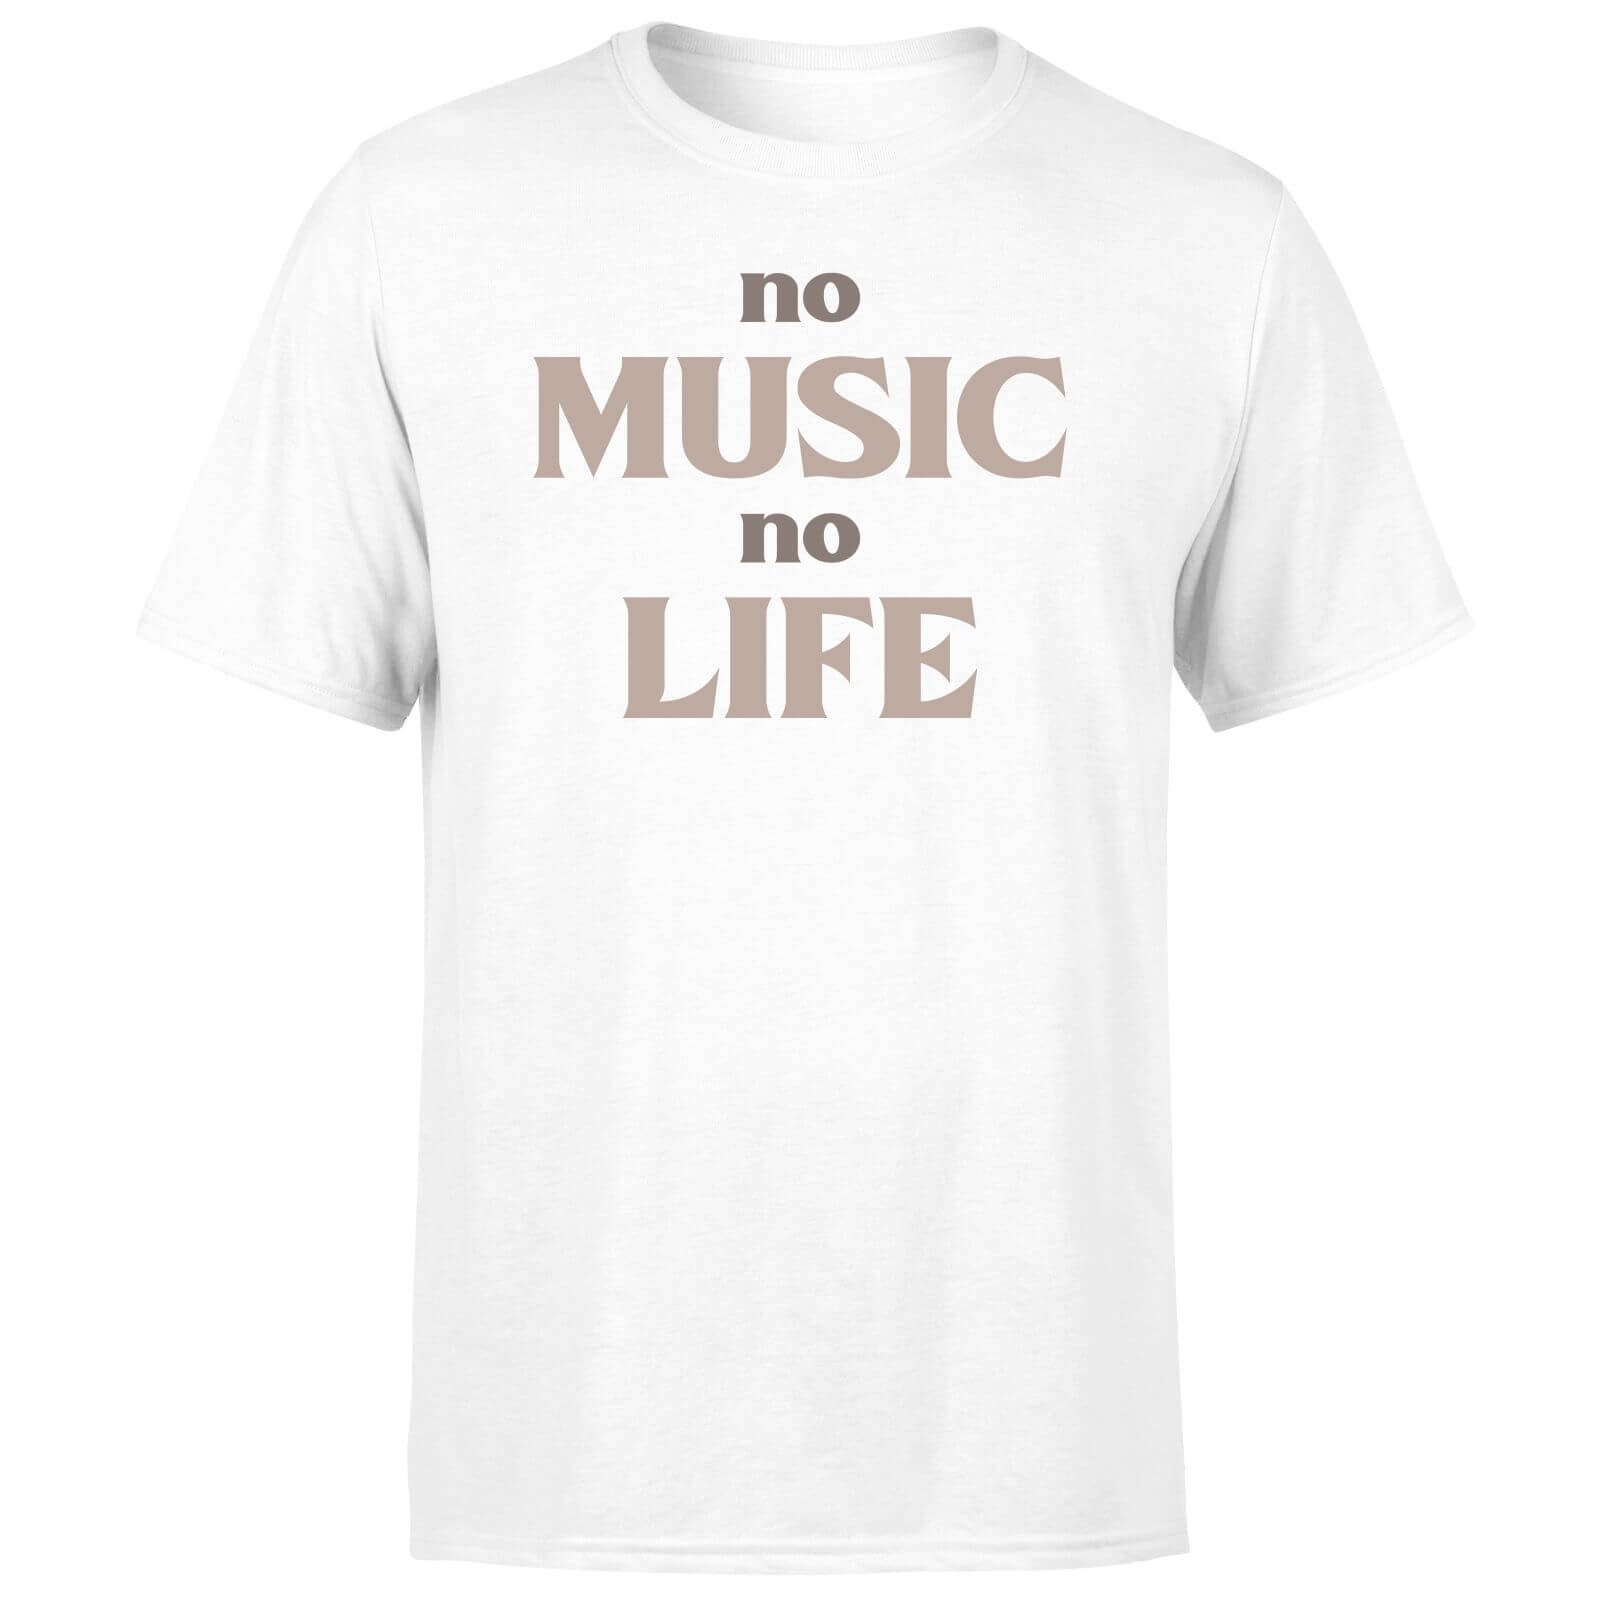 No Music No Life Men's T-Shirt - White - XS - White